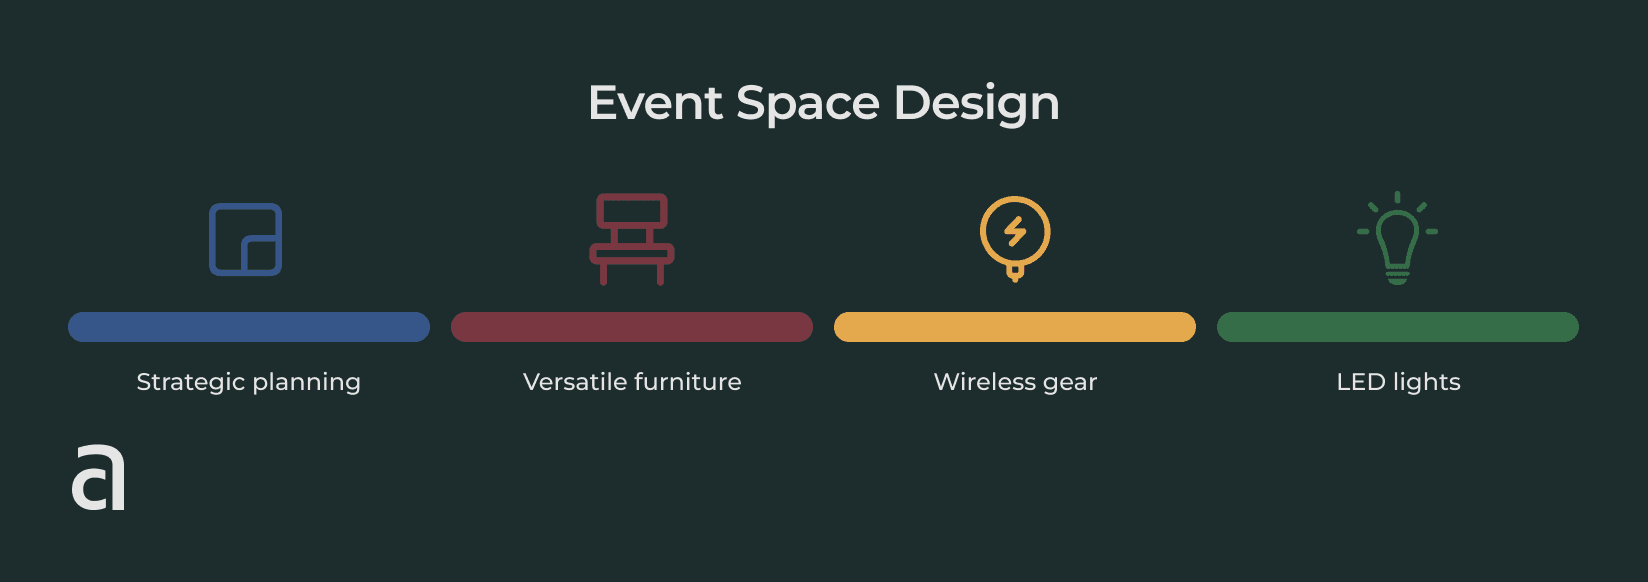 Event space design